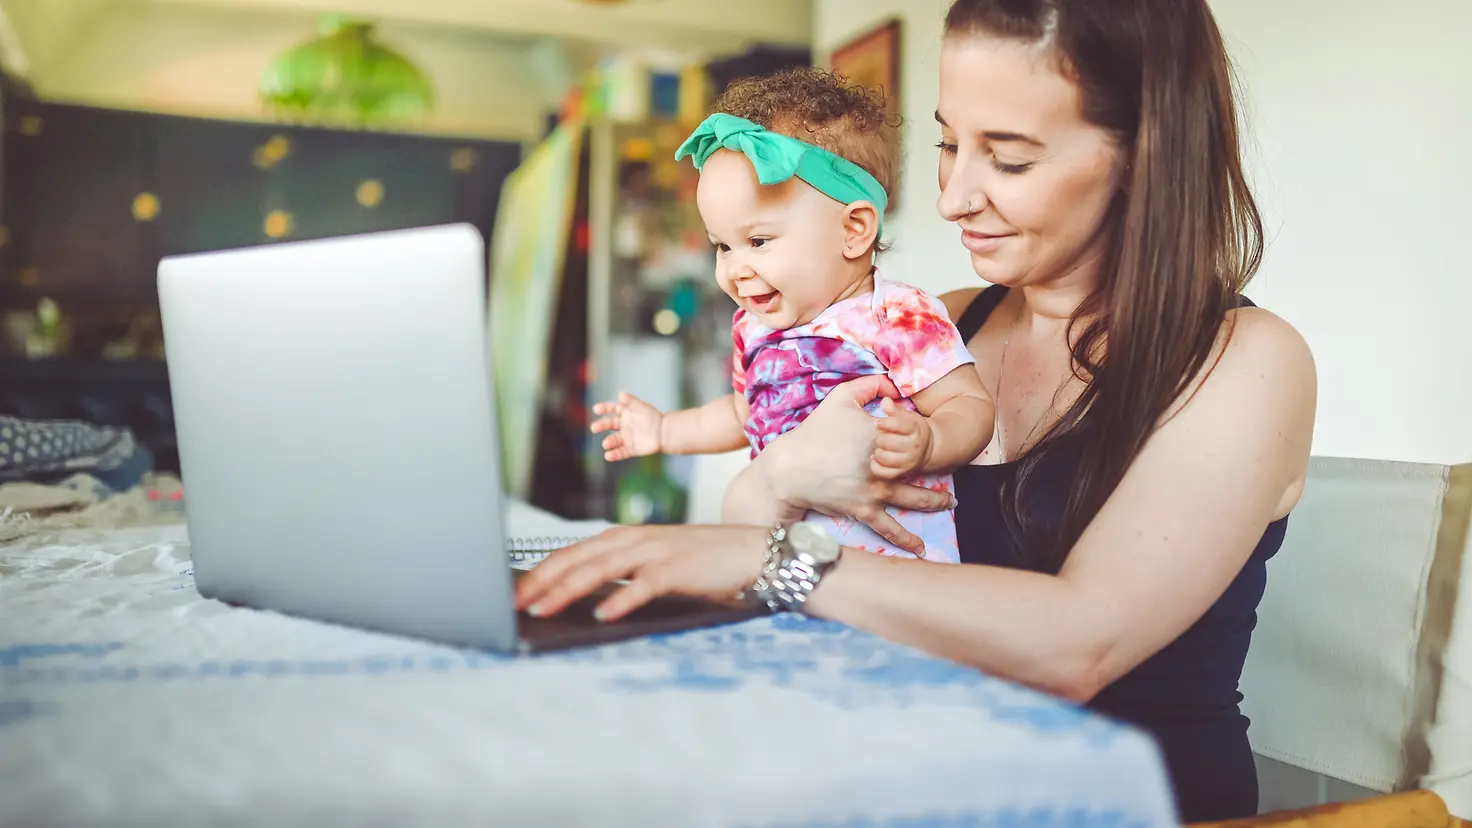 Eine Frau hält ihr Baby auf dem Arm, beide schauen in einen Laptop